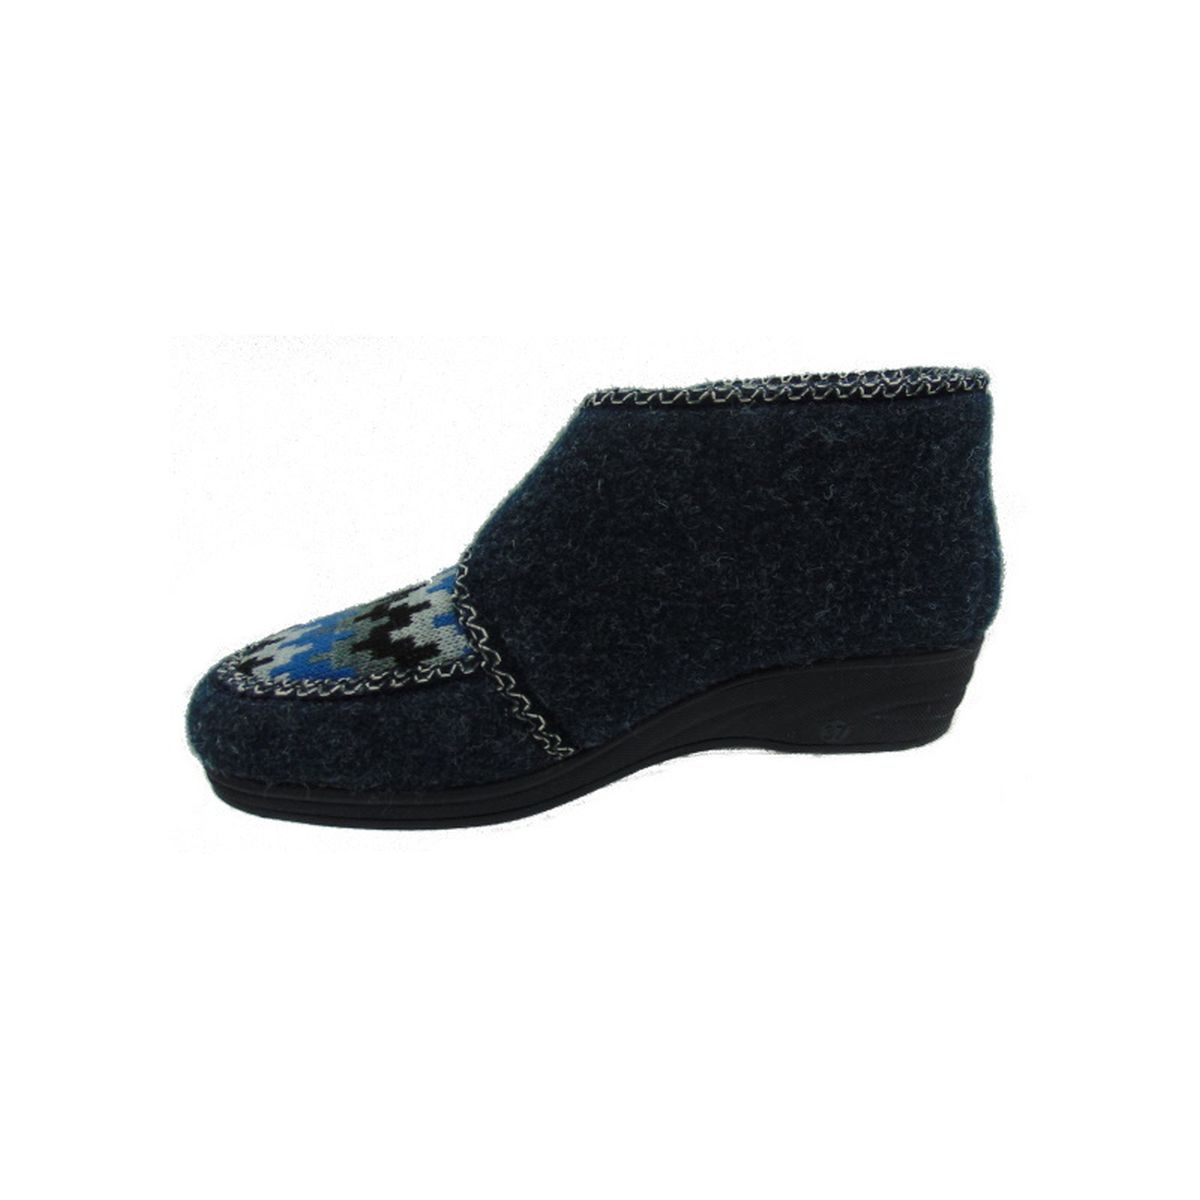 Pantofola Donna con strappo e interno in lana Emanuela 847 Blu